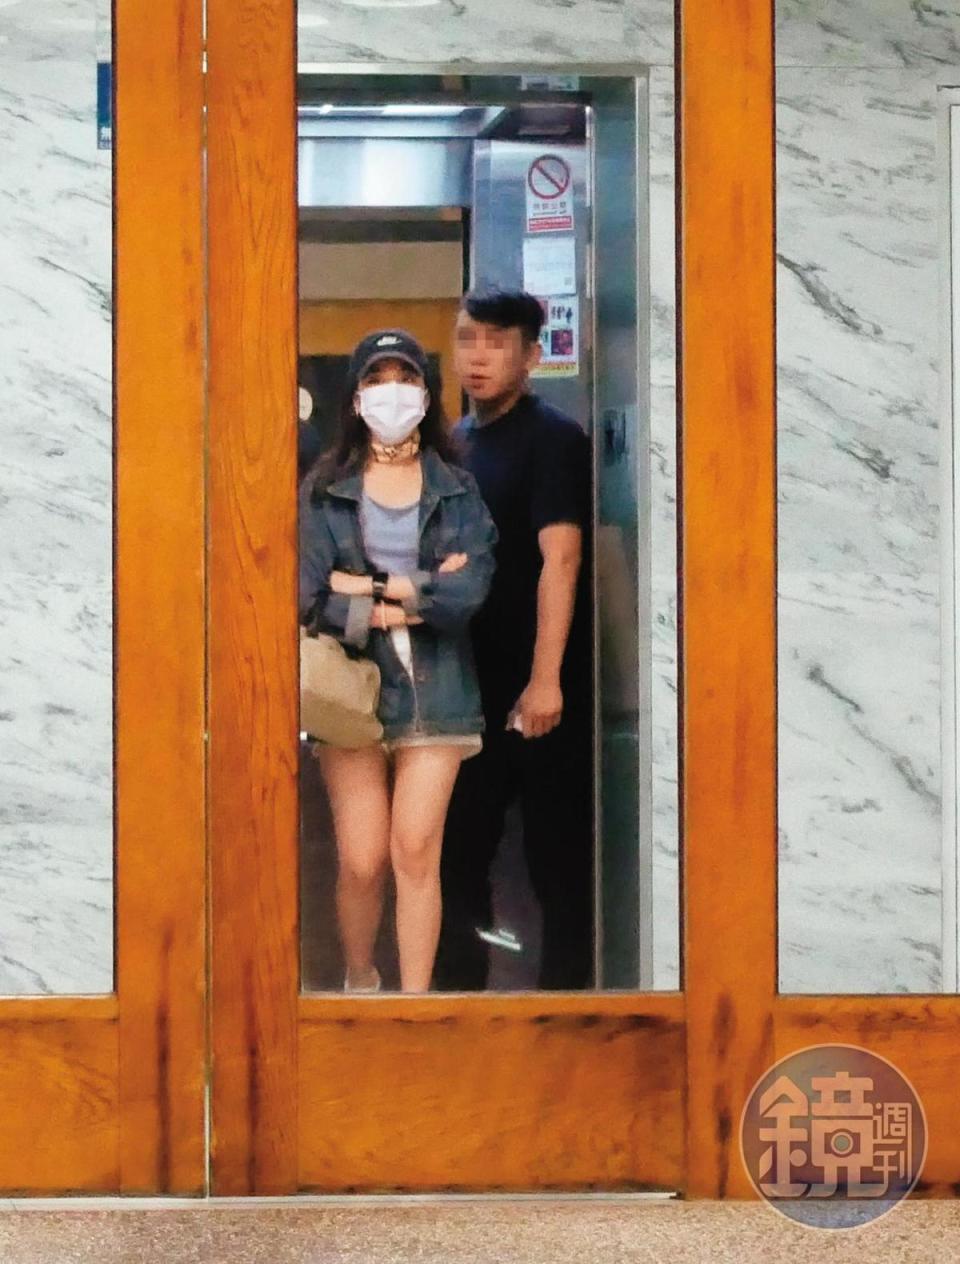 7/11 23：13 離開休息的旅館後，陳紫渝跟男友搭電梯下樓準備離開。